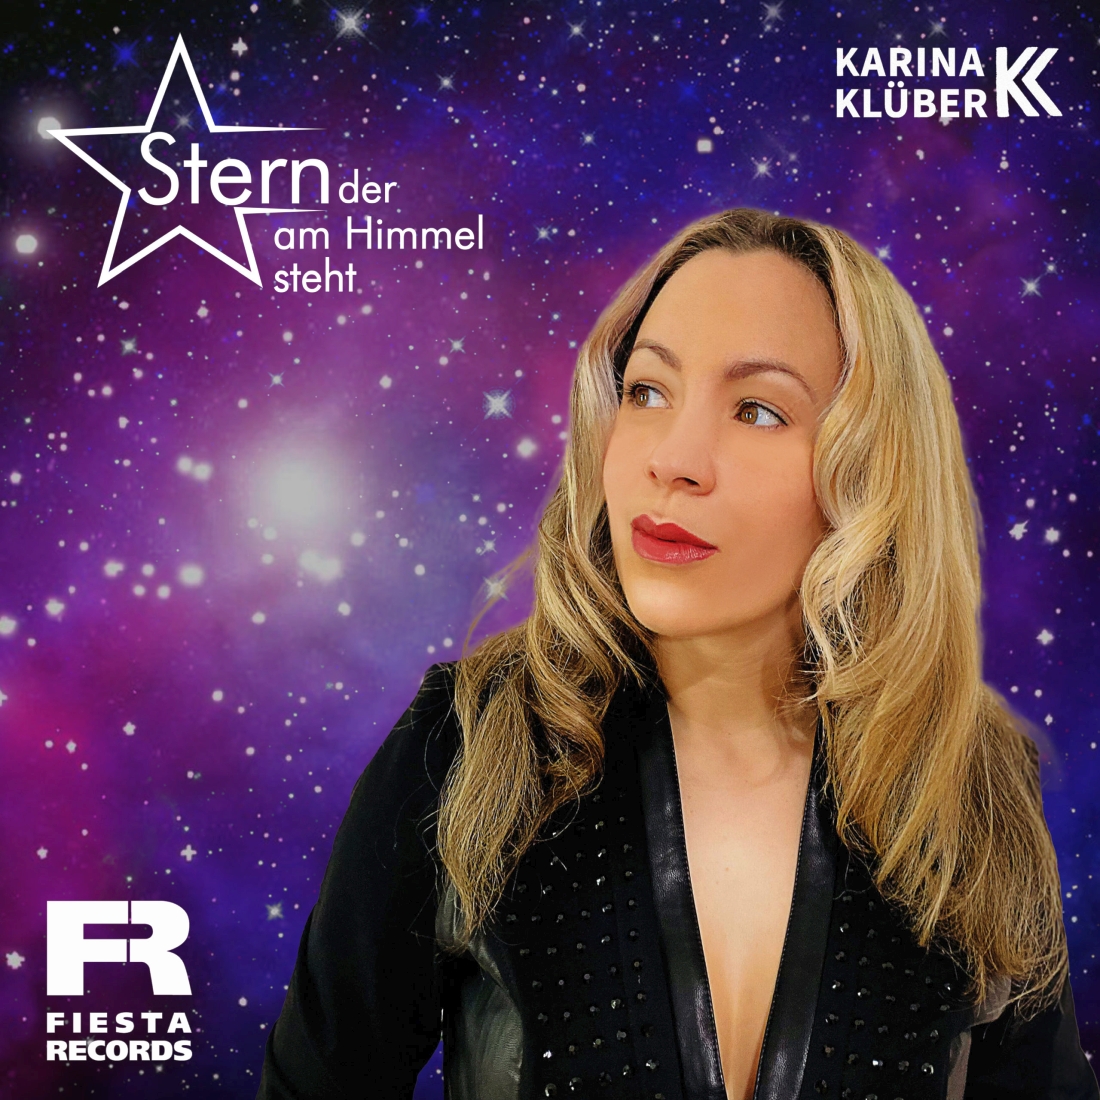 Karina Klüber - Stern der am Himmel steht (Fiesta Records)